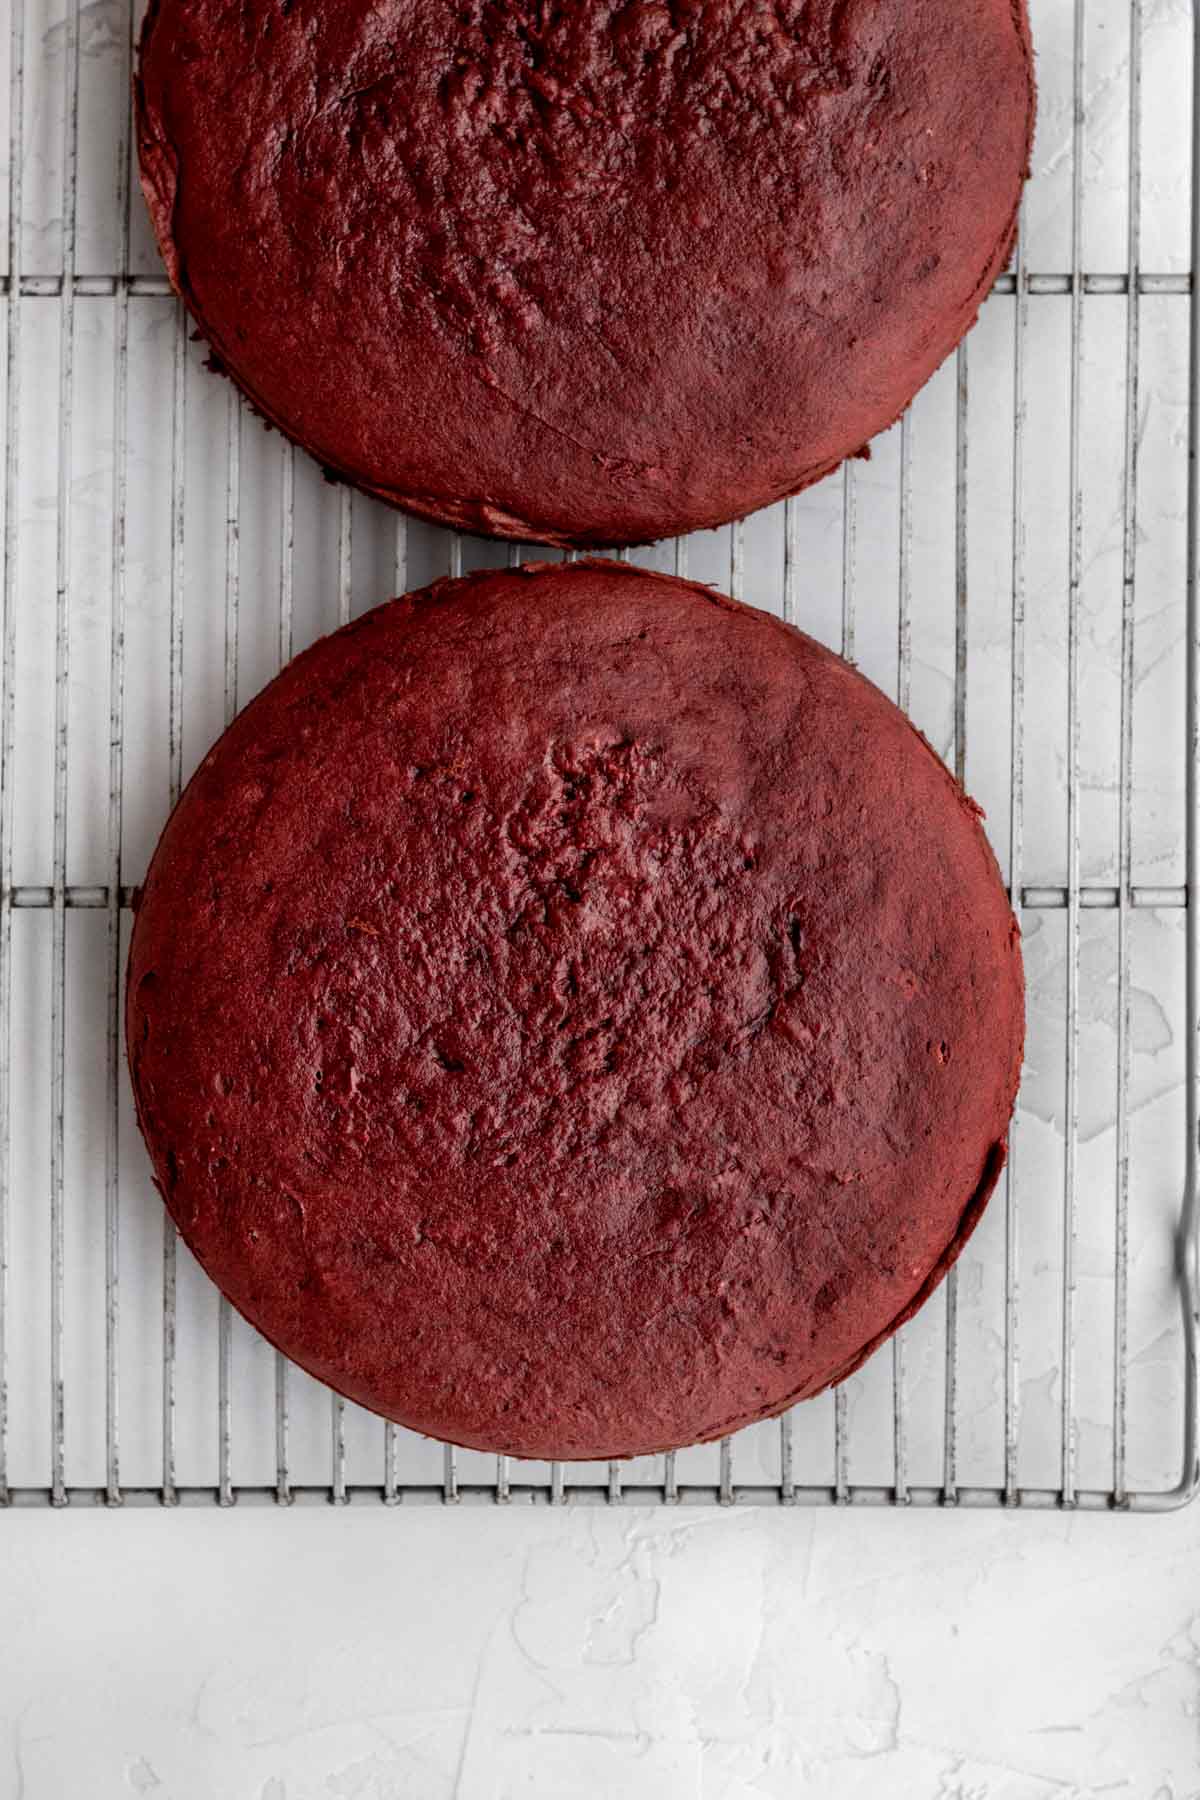 The red velvet cakes baked.